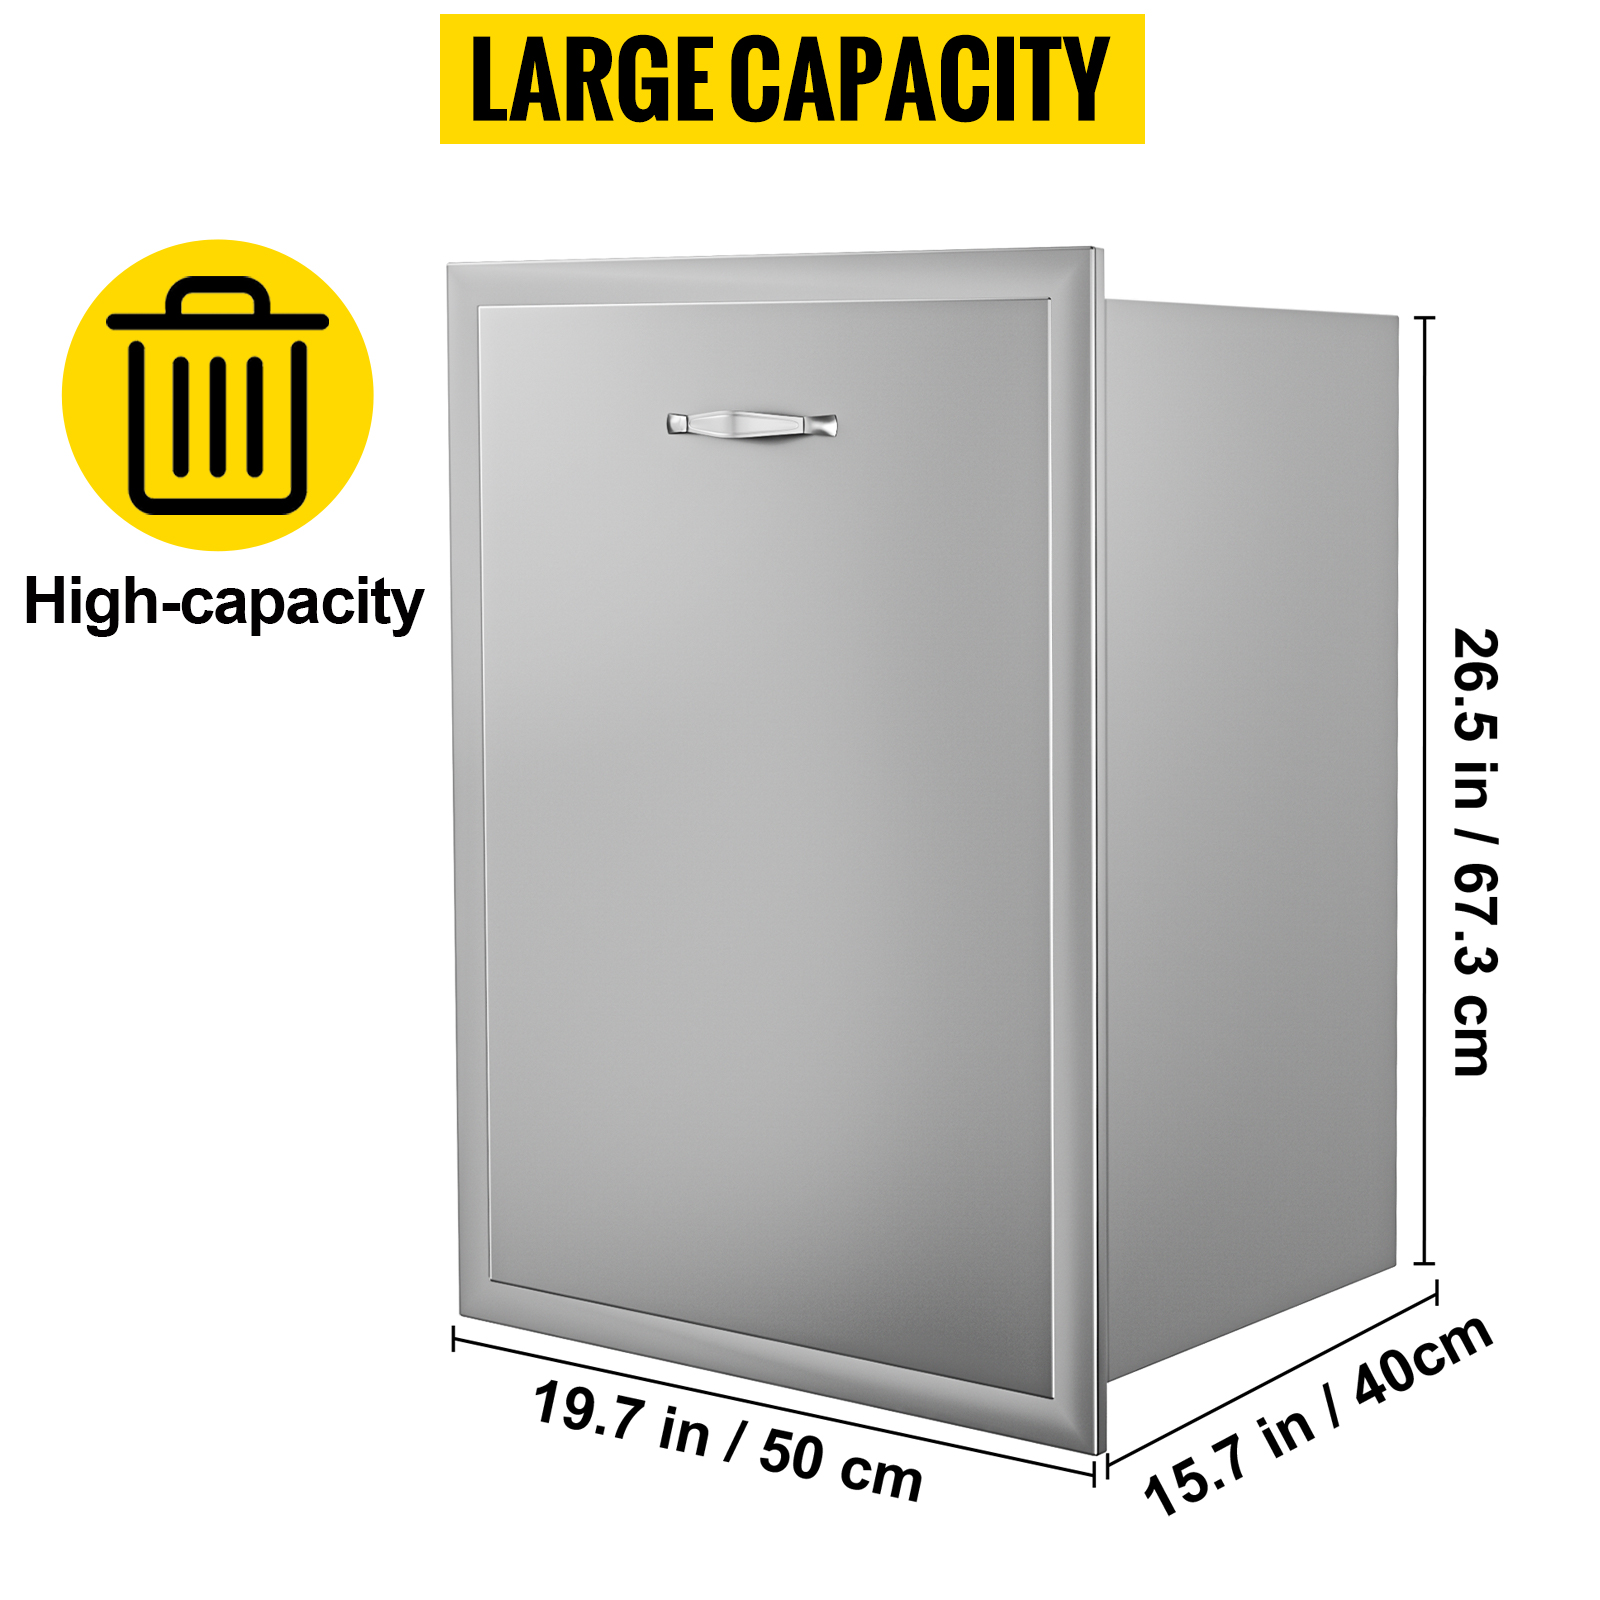 72l 450mm width compressor minibar fridge